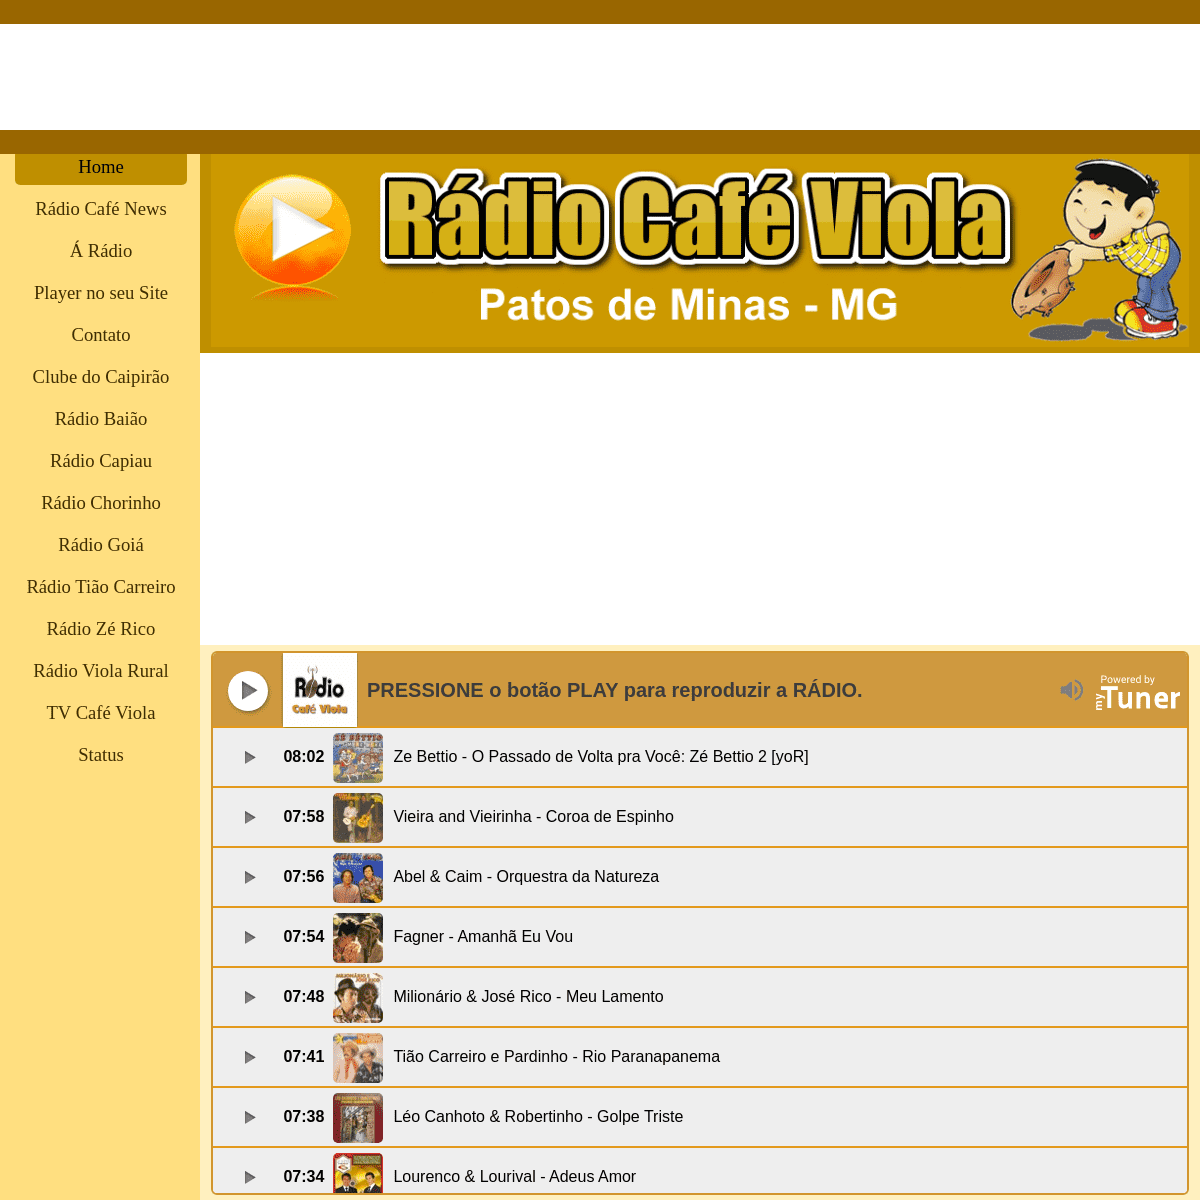 A complete backup of radiocafeviola.net